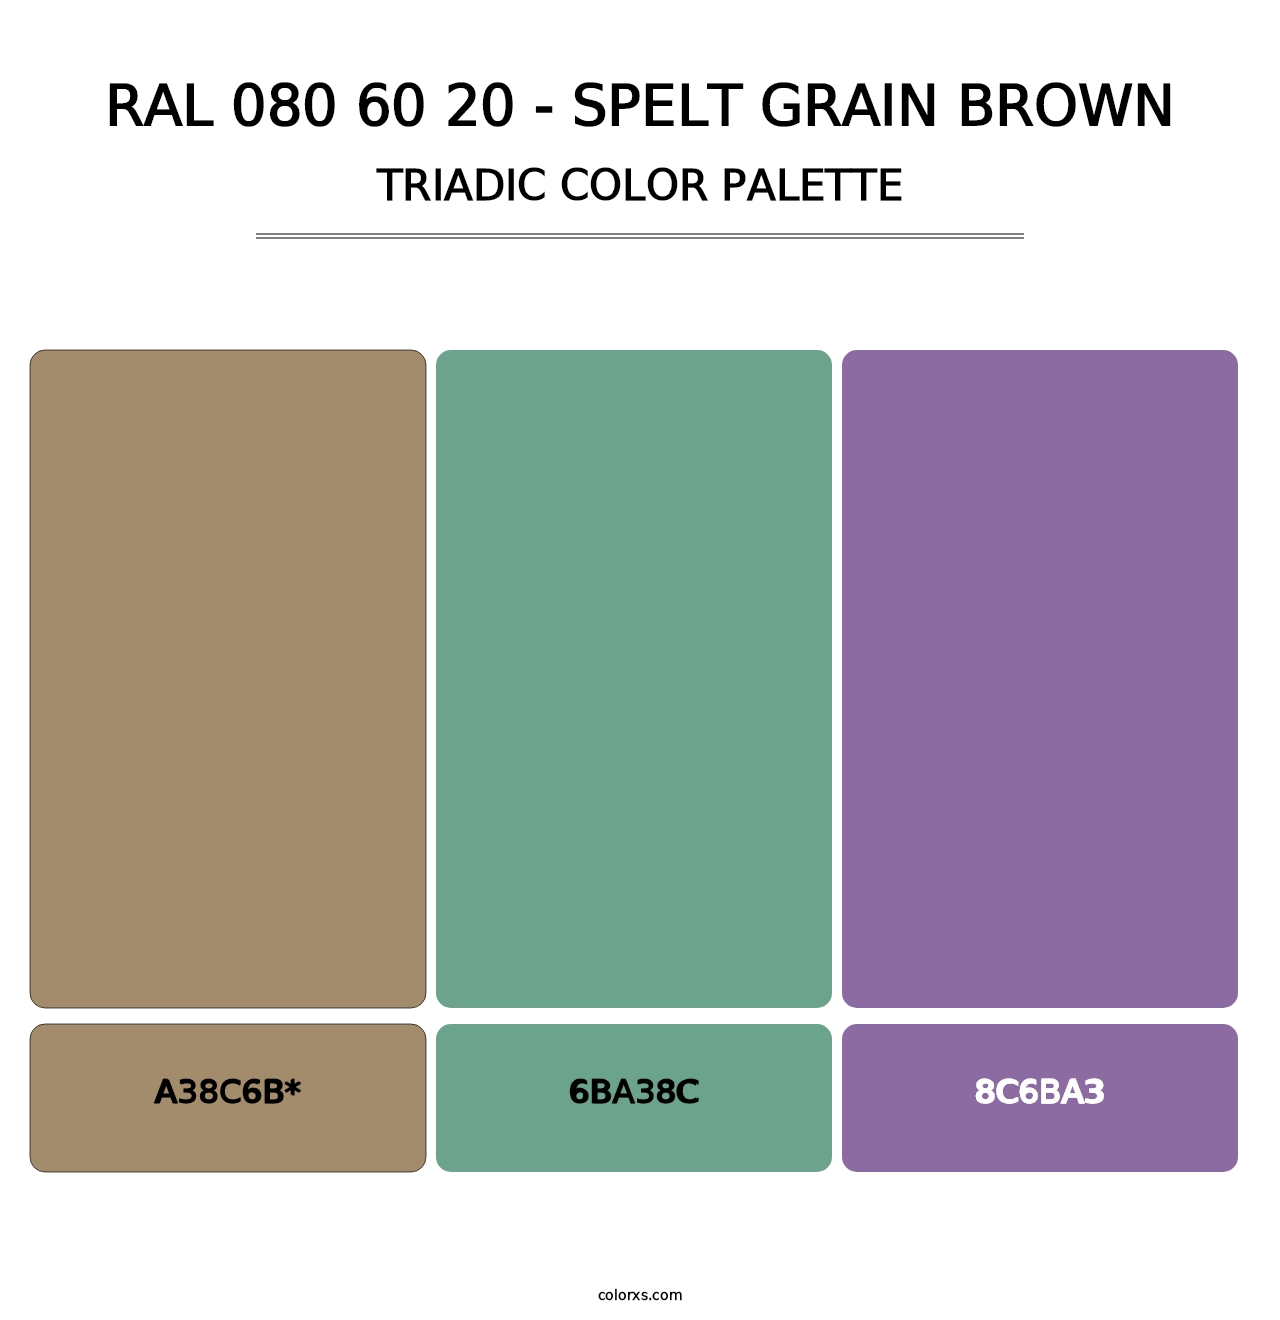 RAL 080 60 20 - Spelt Grain Brown - Triadic Color Palette